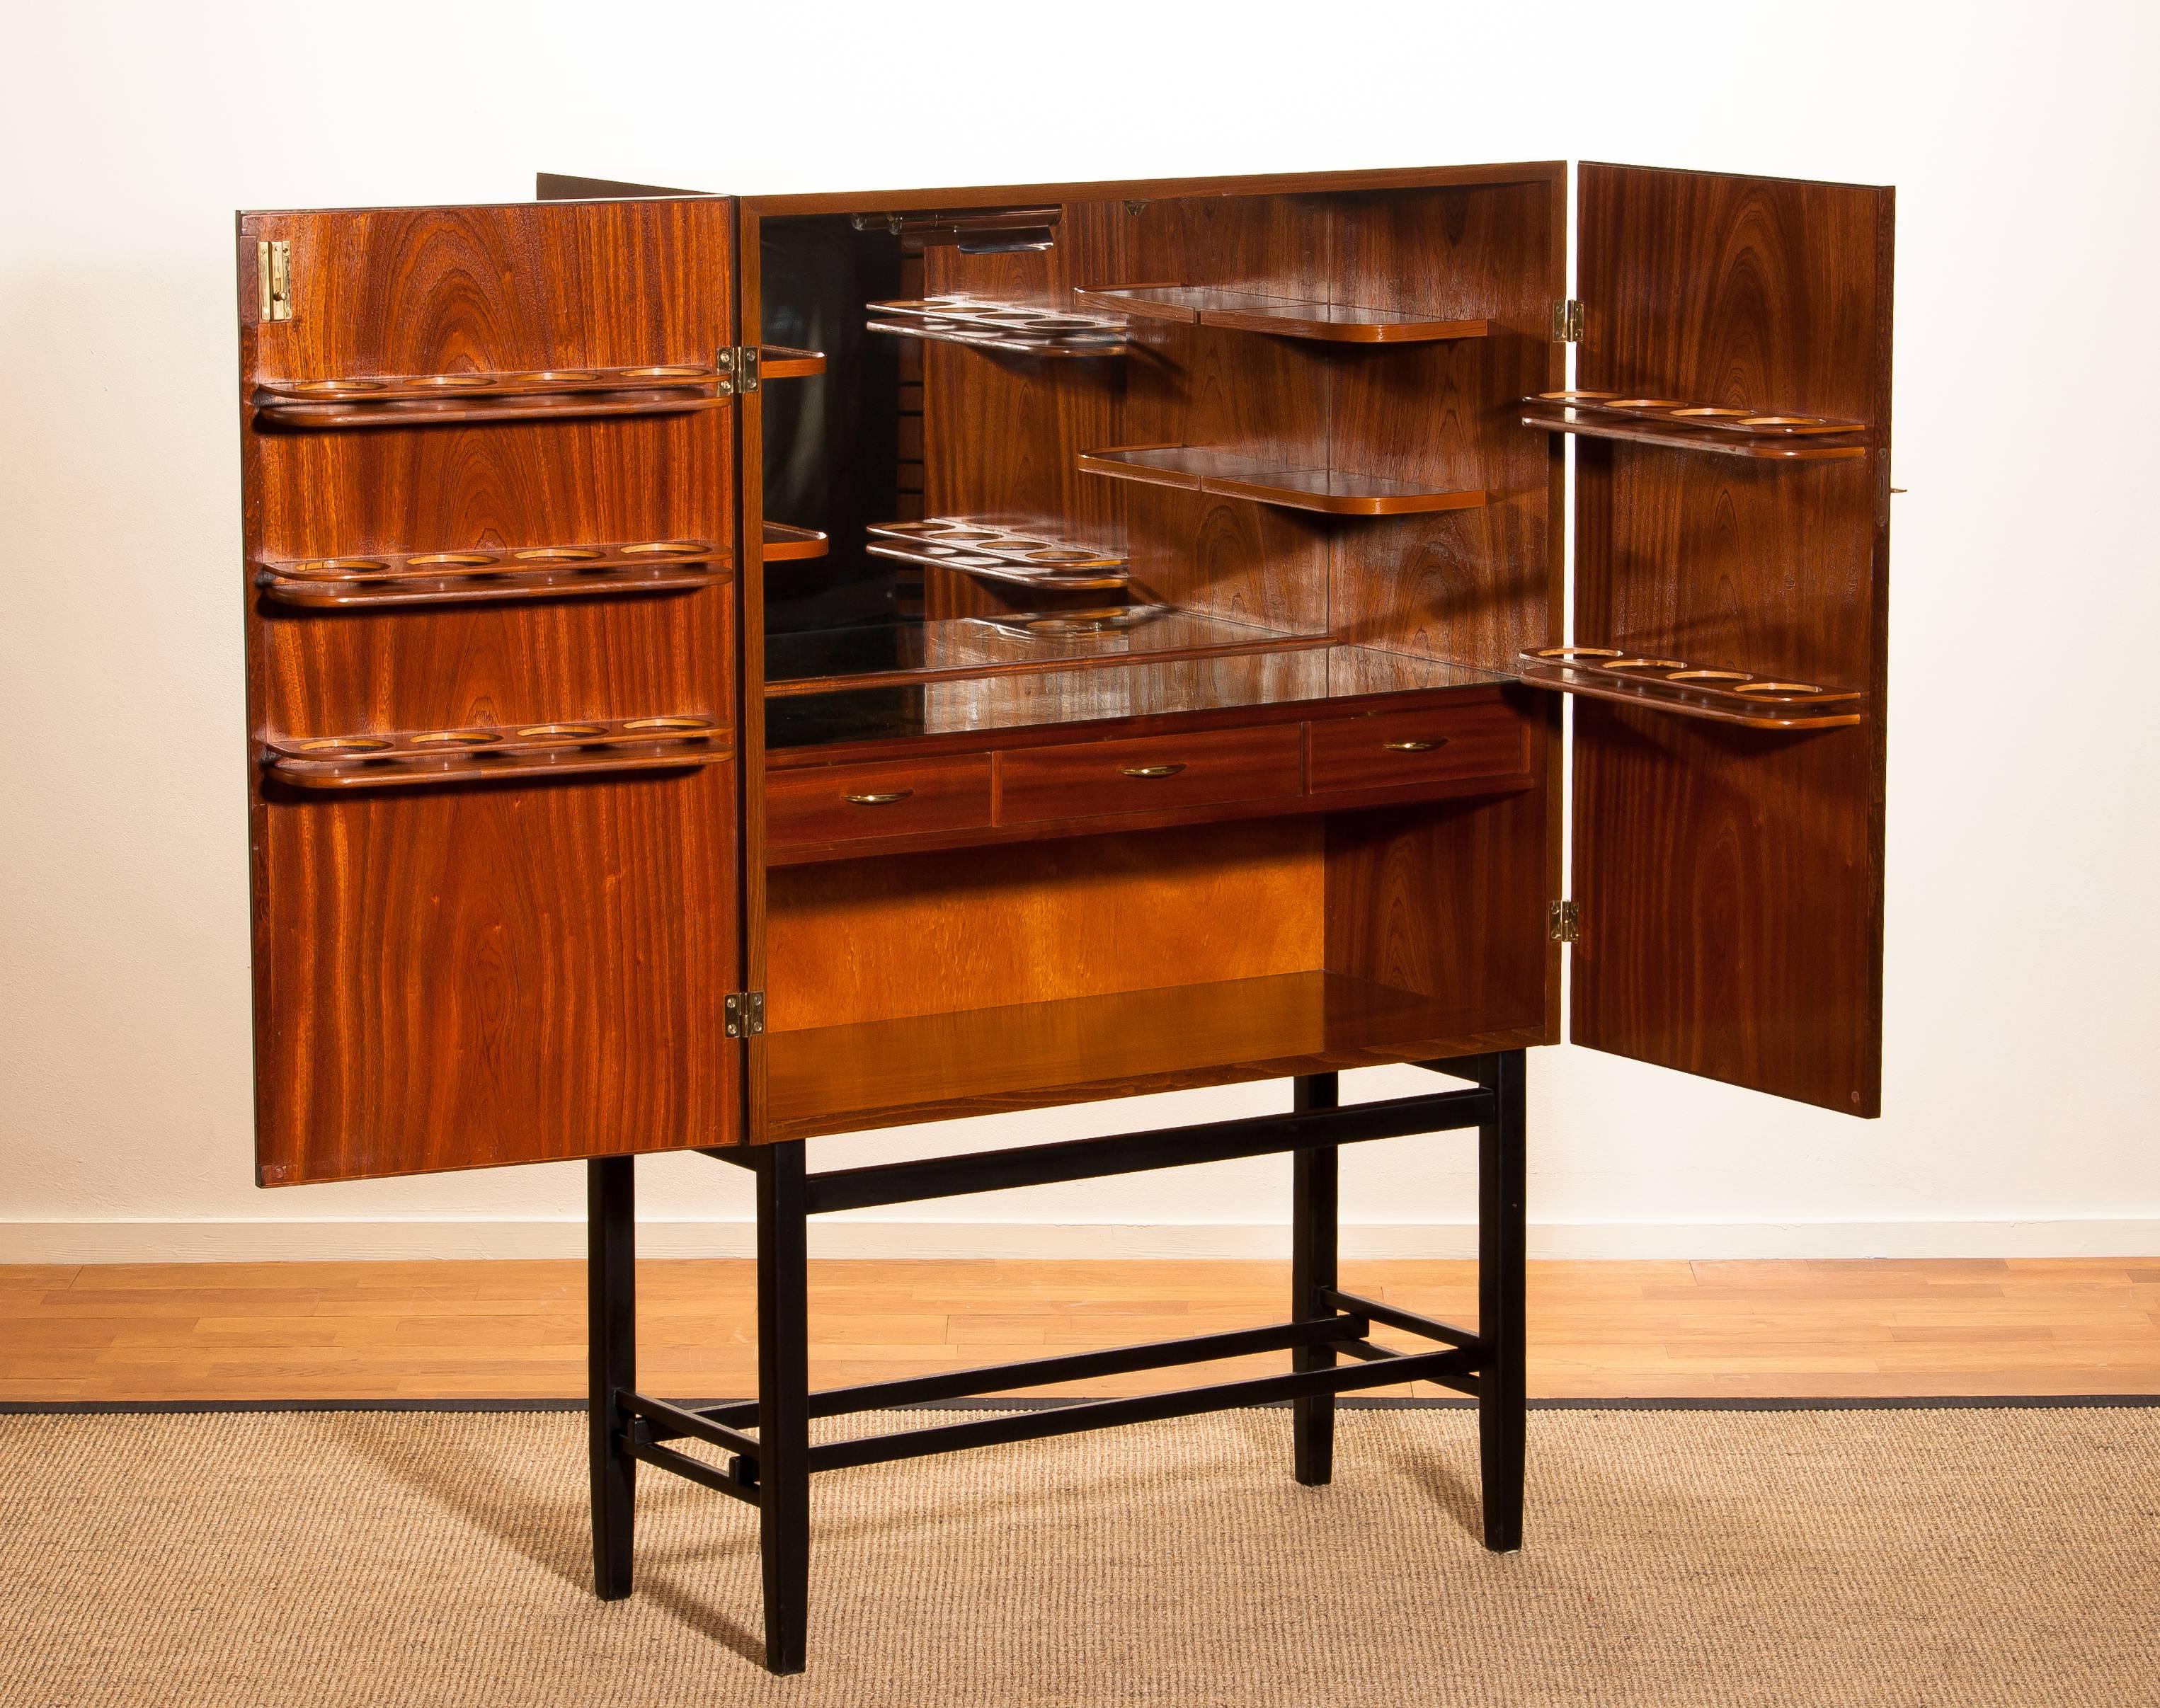 Mid-20th Century Mahogany Dry Bar Cabinet, Brass Details, High Black Skinny Legs Made by Förenade